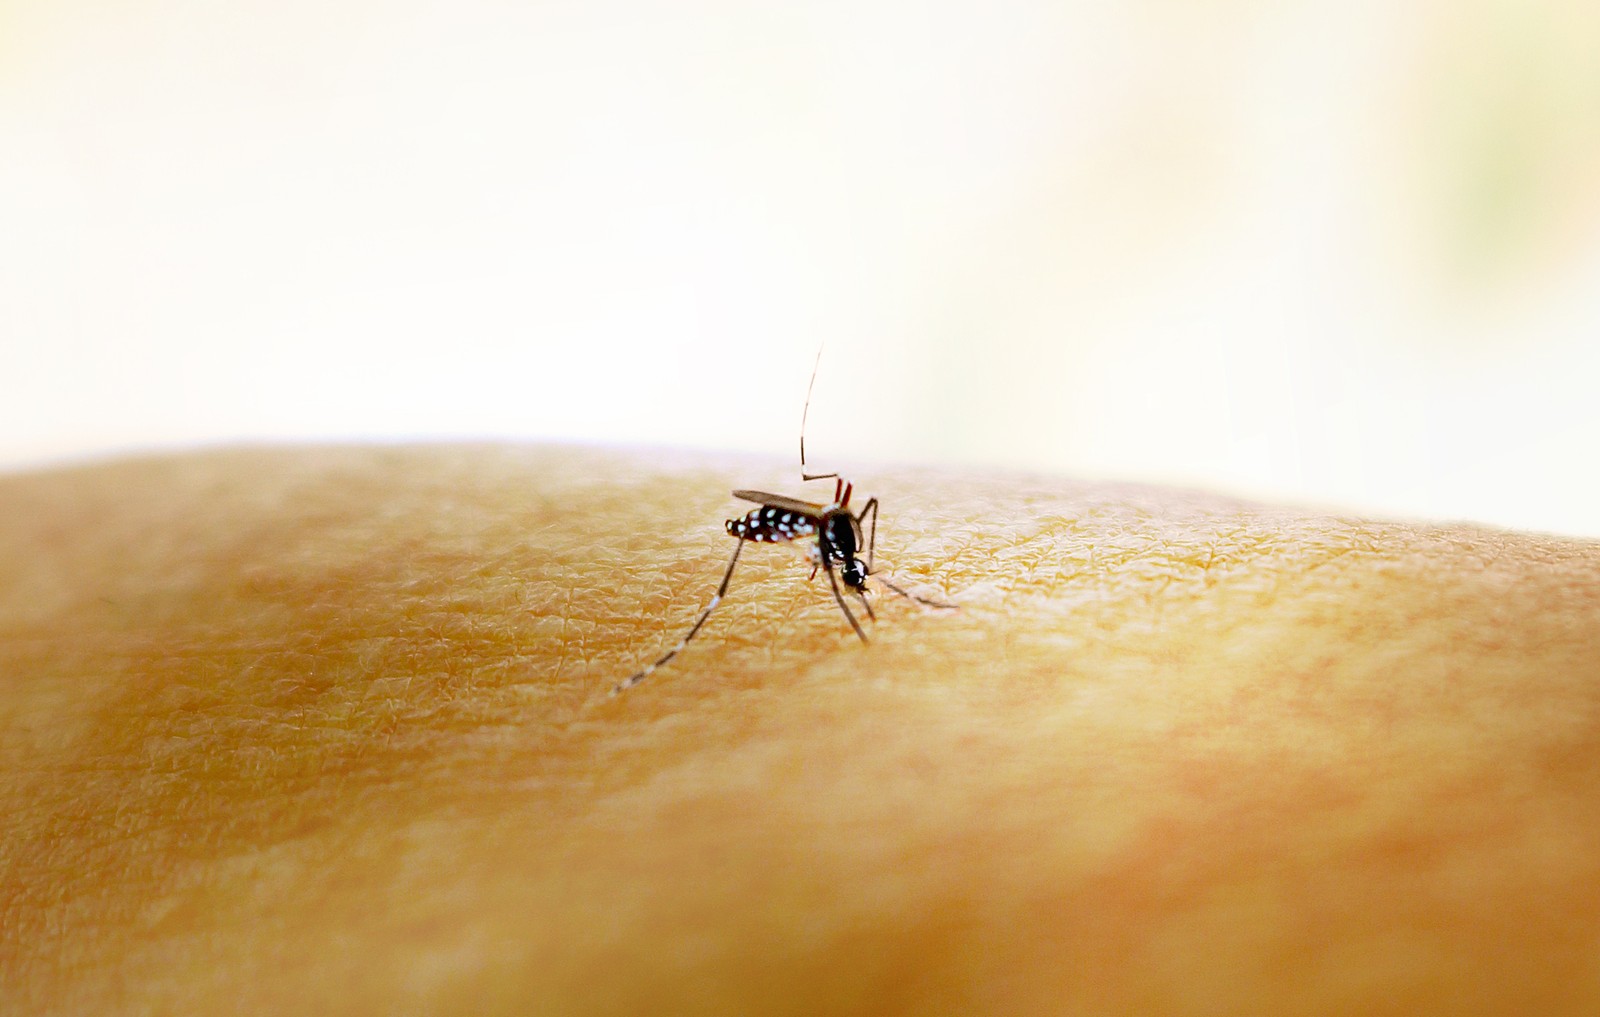 Mosquito Aedes aegypti, transmissor de dengue, zika e chikungunya. — Foto: NIAID